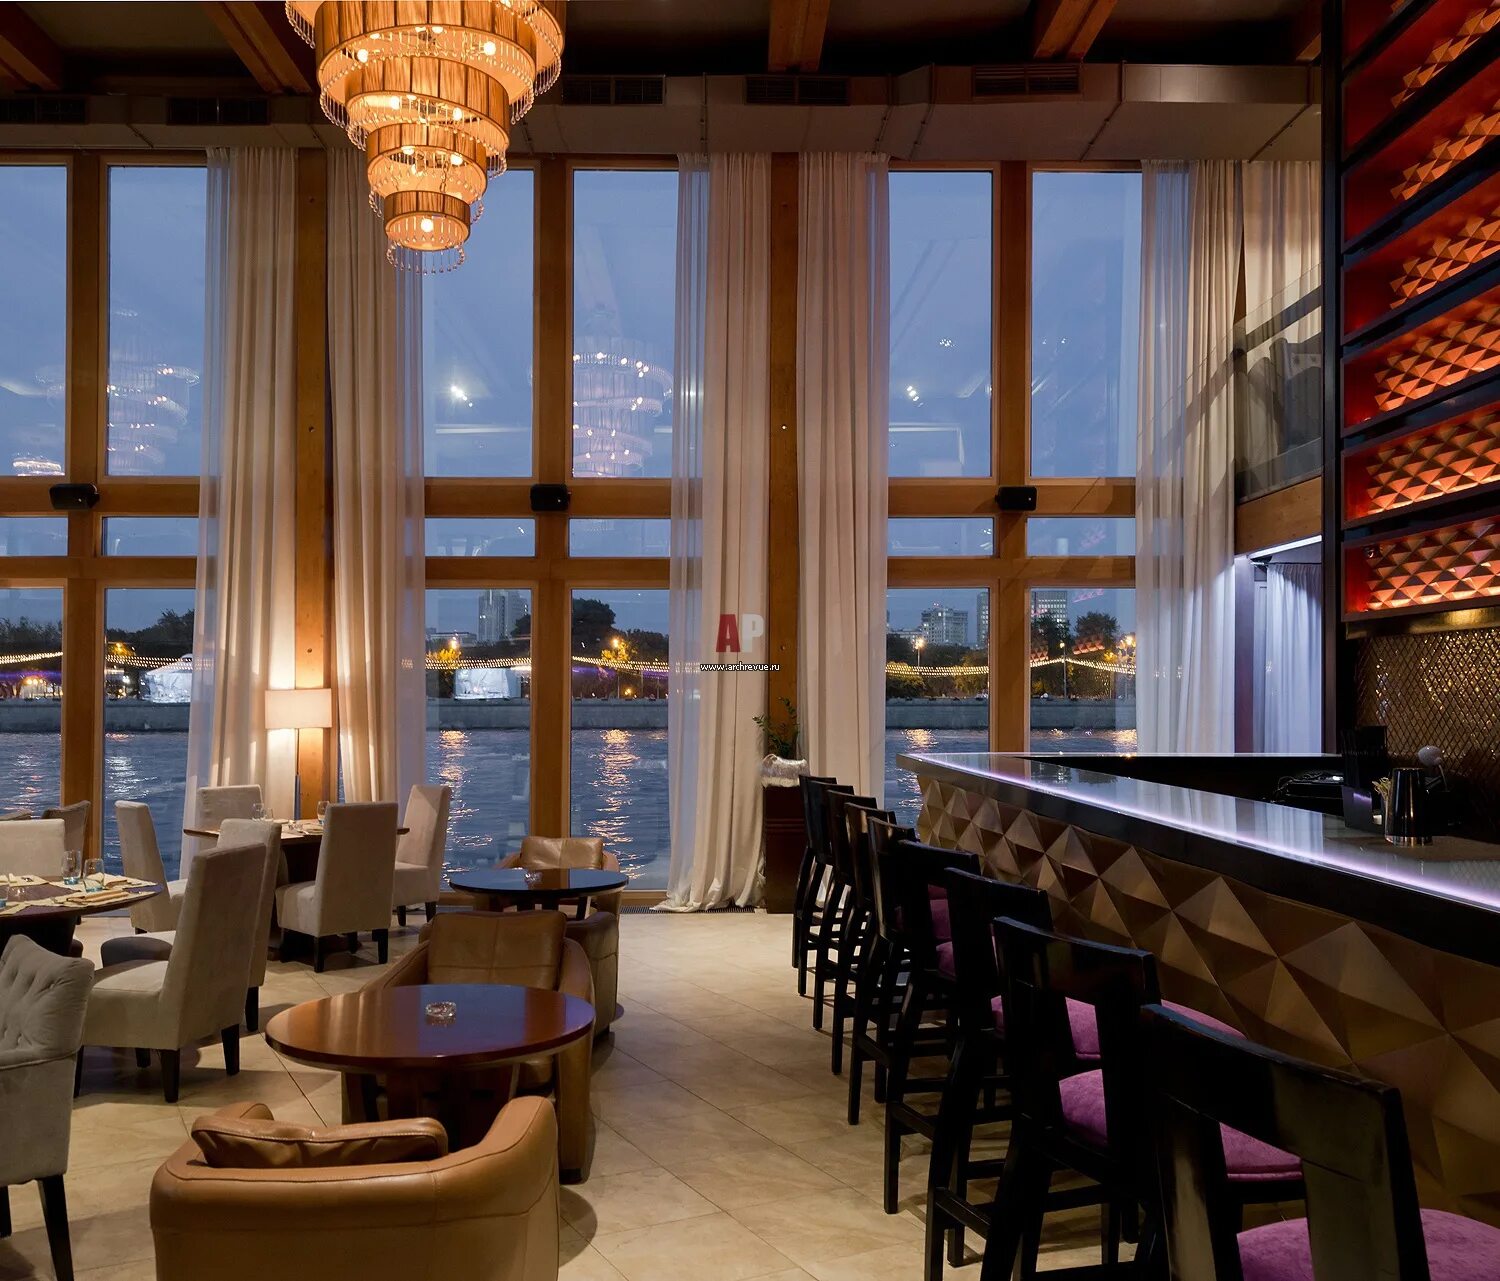 Ресторан с панорамными окнами. Интерьер кофе с понарамными окнами. Рестораны с красивым видом. Интерьер кафе с панорамными окнами.